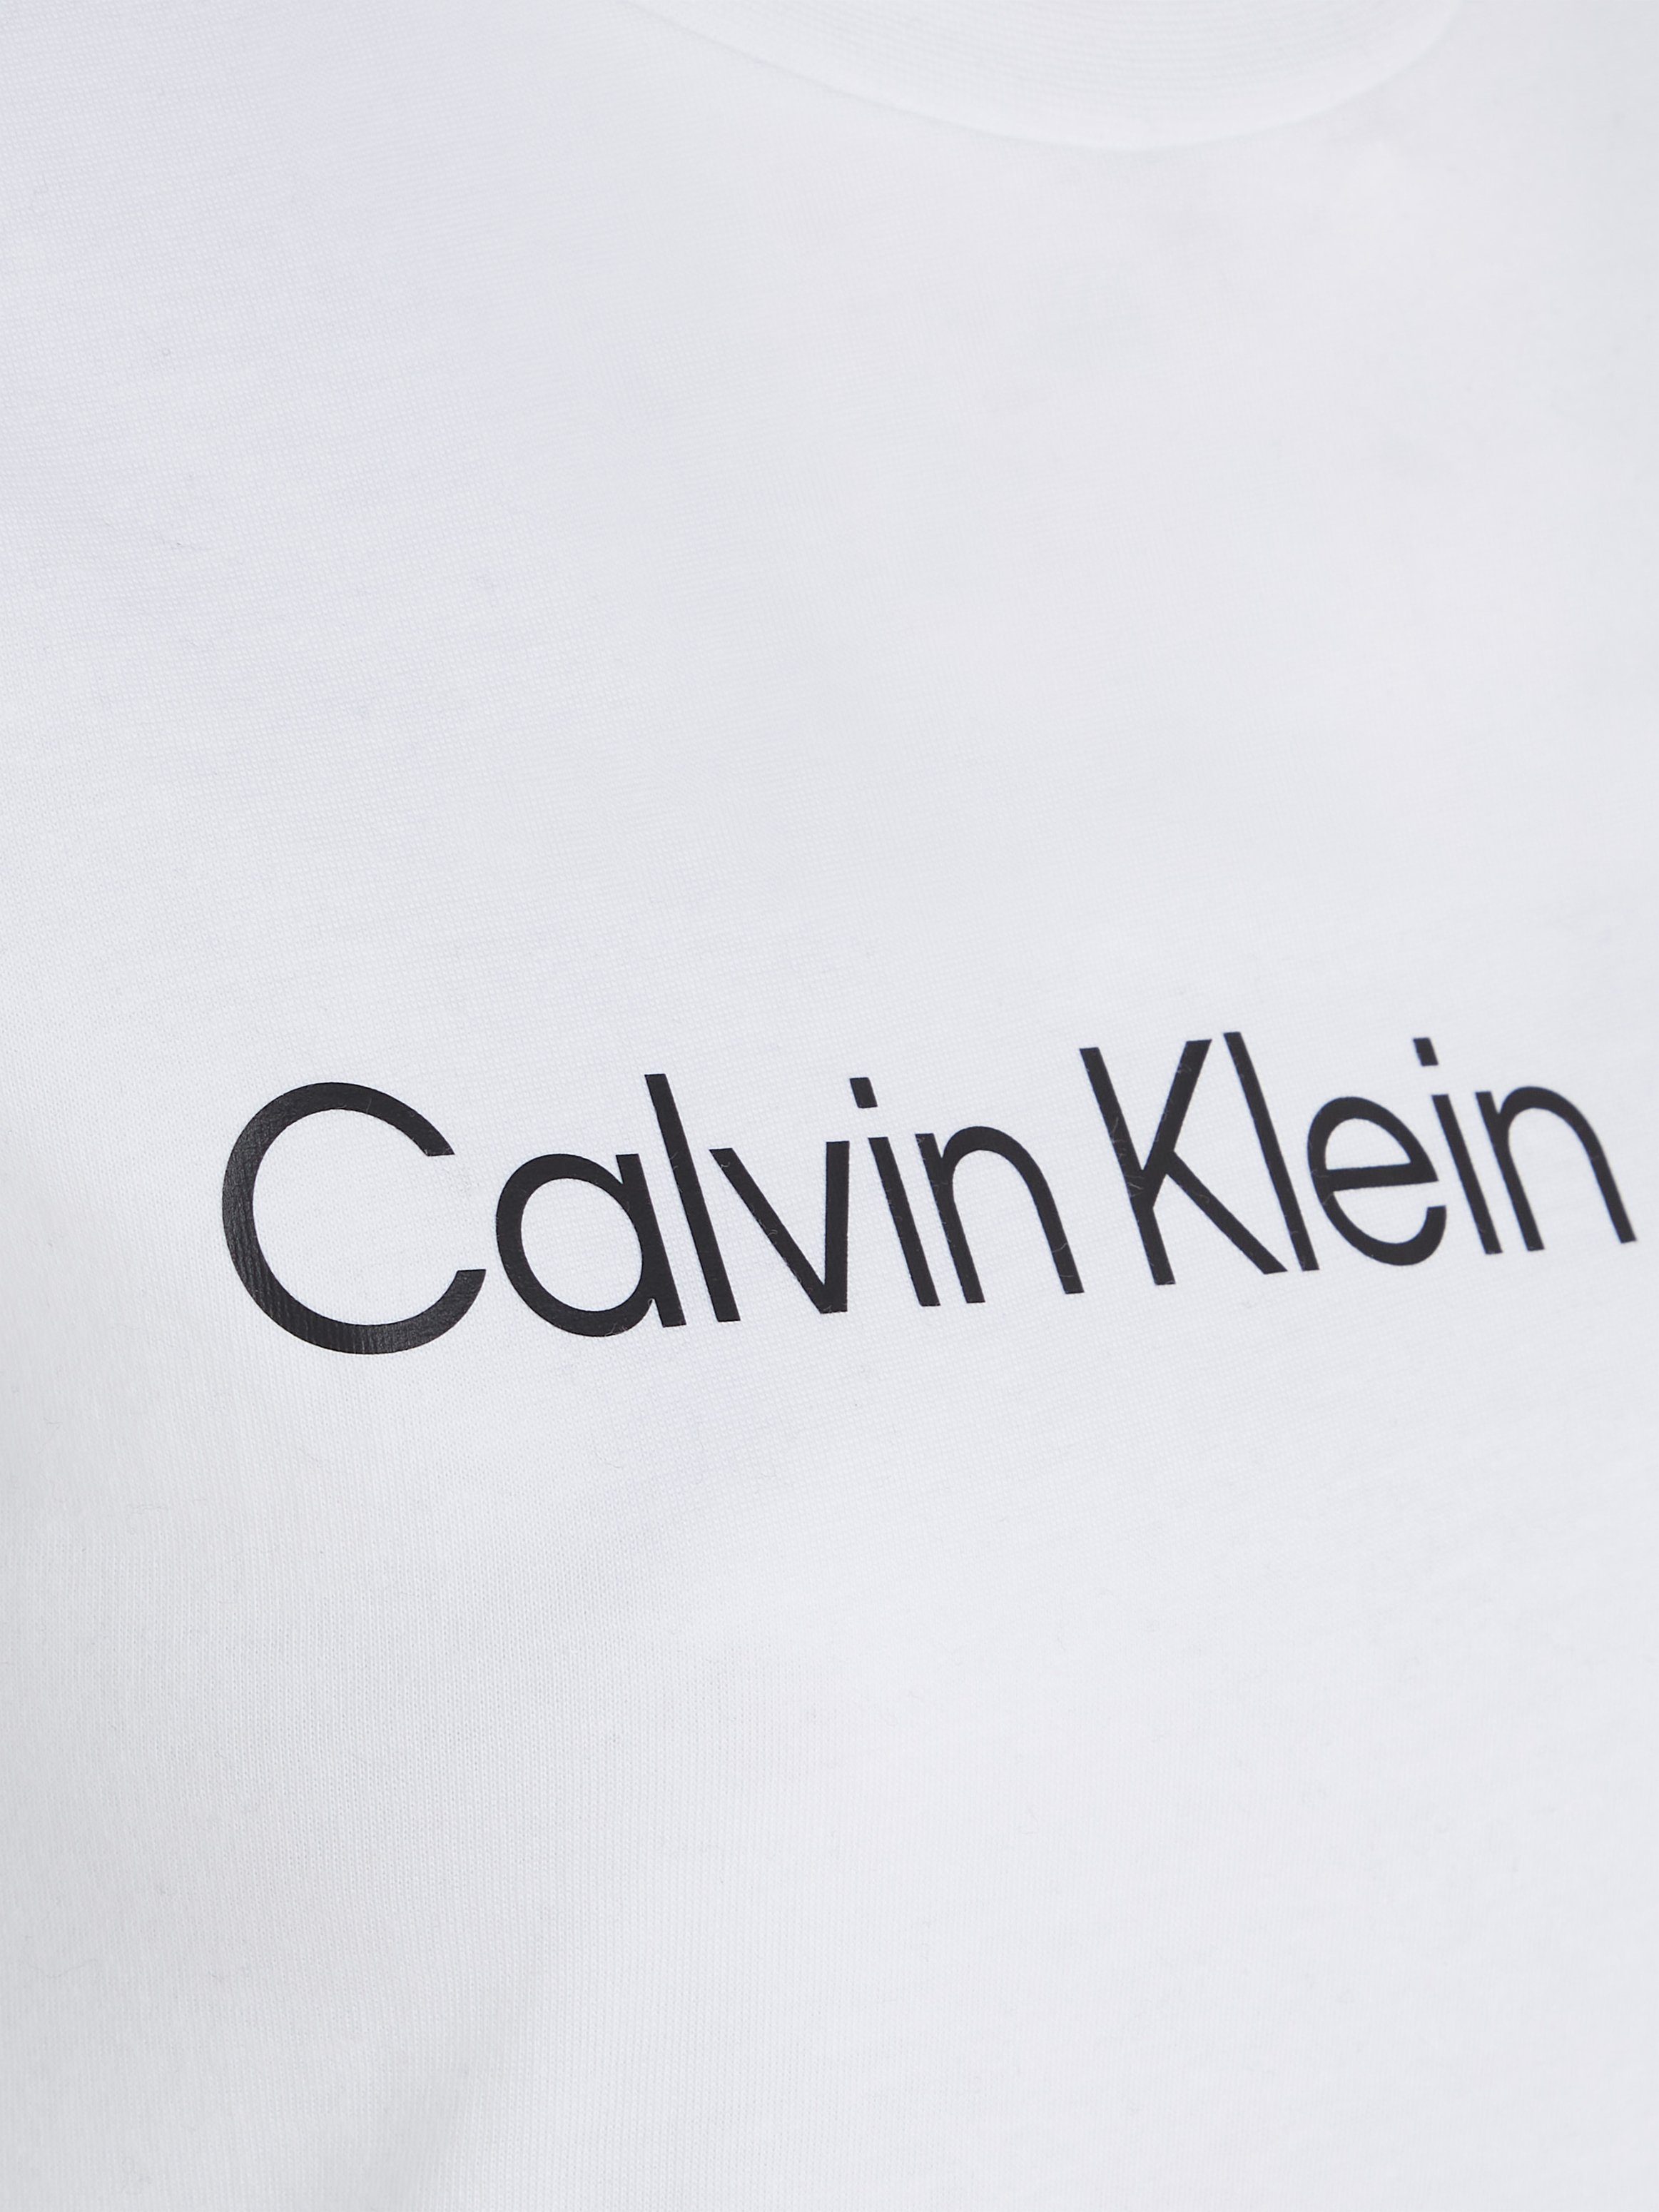 Calvin Klein Jeans T-Shirt LOGO Bright TEE FIT White SLIM CK-Logoschriftzug CORE INSTIT mit